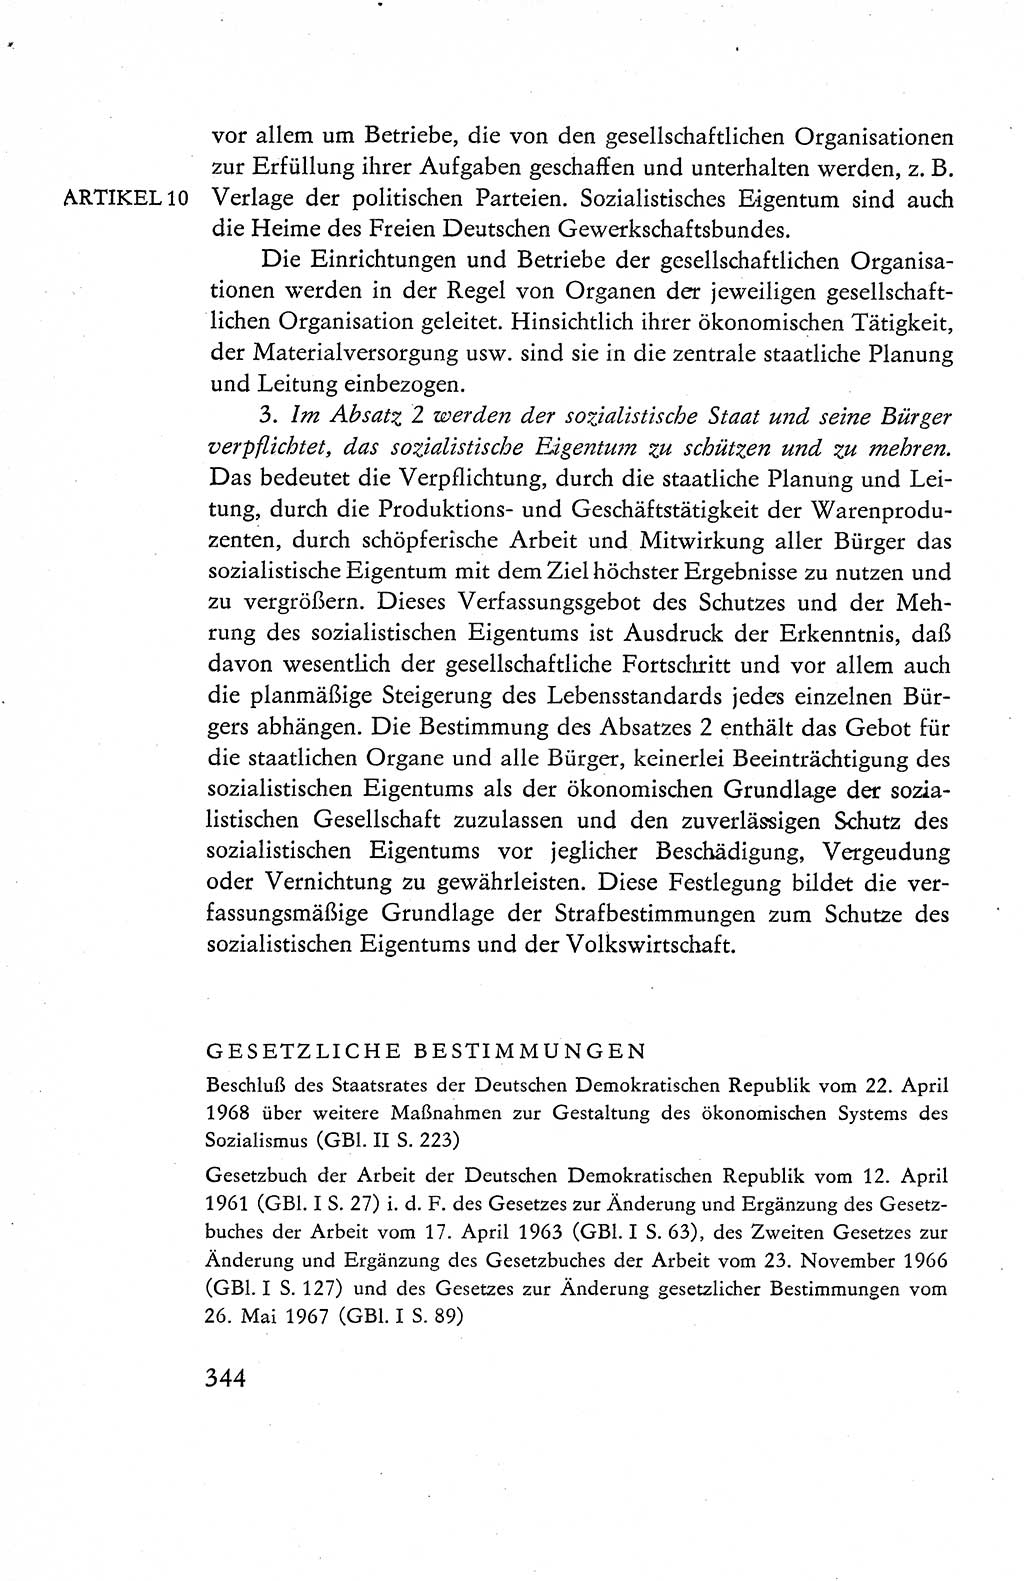 Verfassung der Deutschen Demokratischen Republik (DDR), Dokumente, Kommentar 1969, Band 1, Seite 344 (Verf. DDR Dok. Komm. 1969, Bd. 1, S. 344)